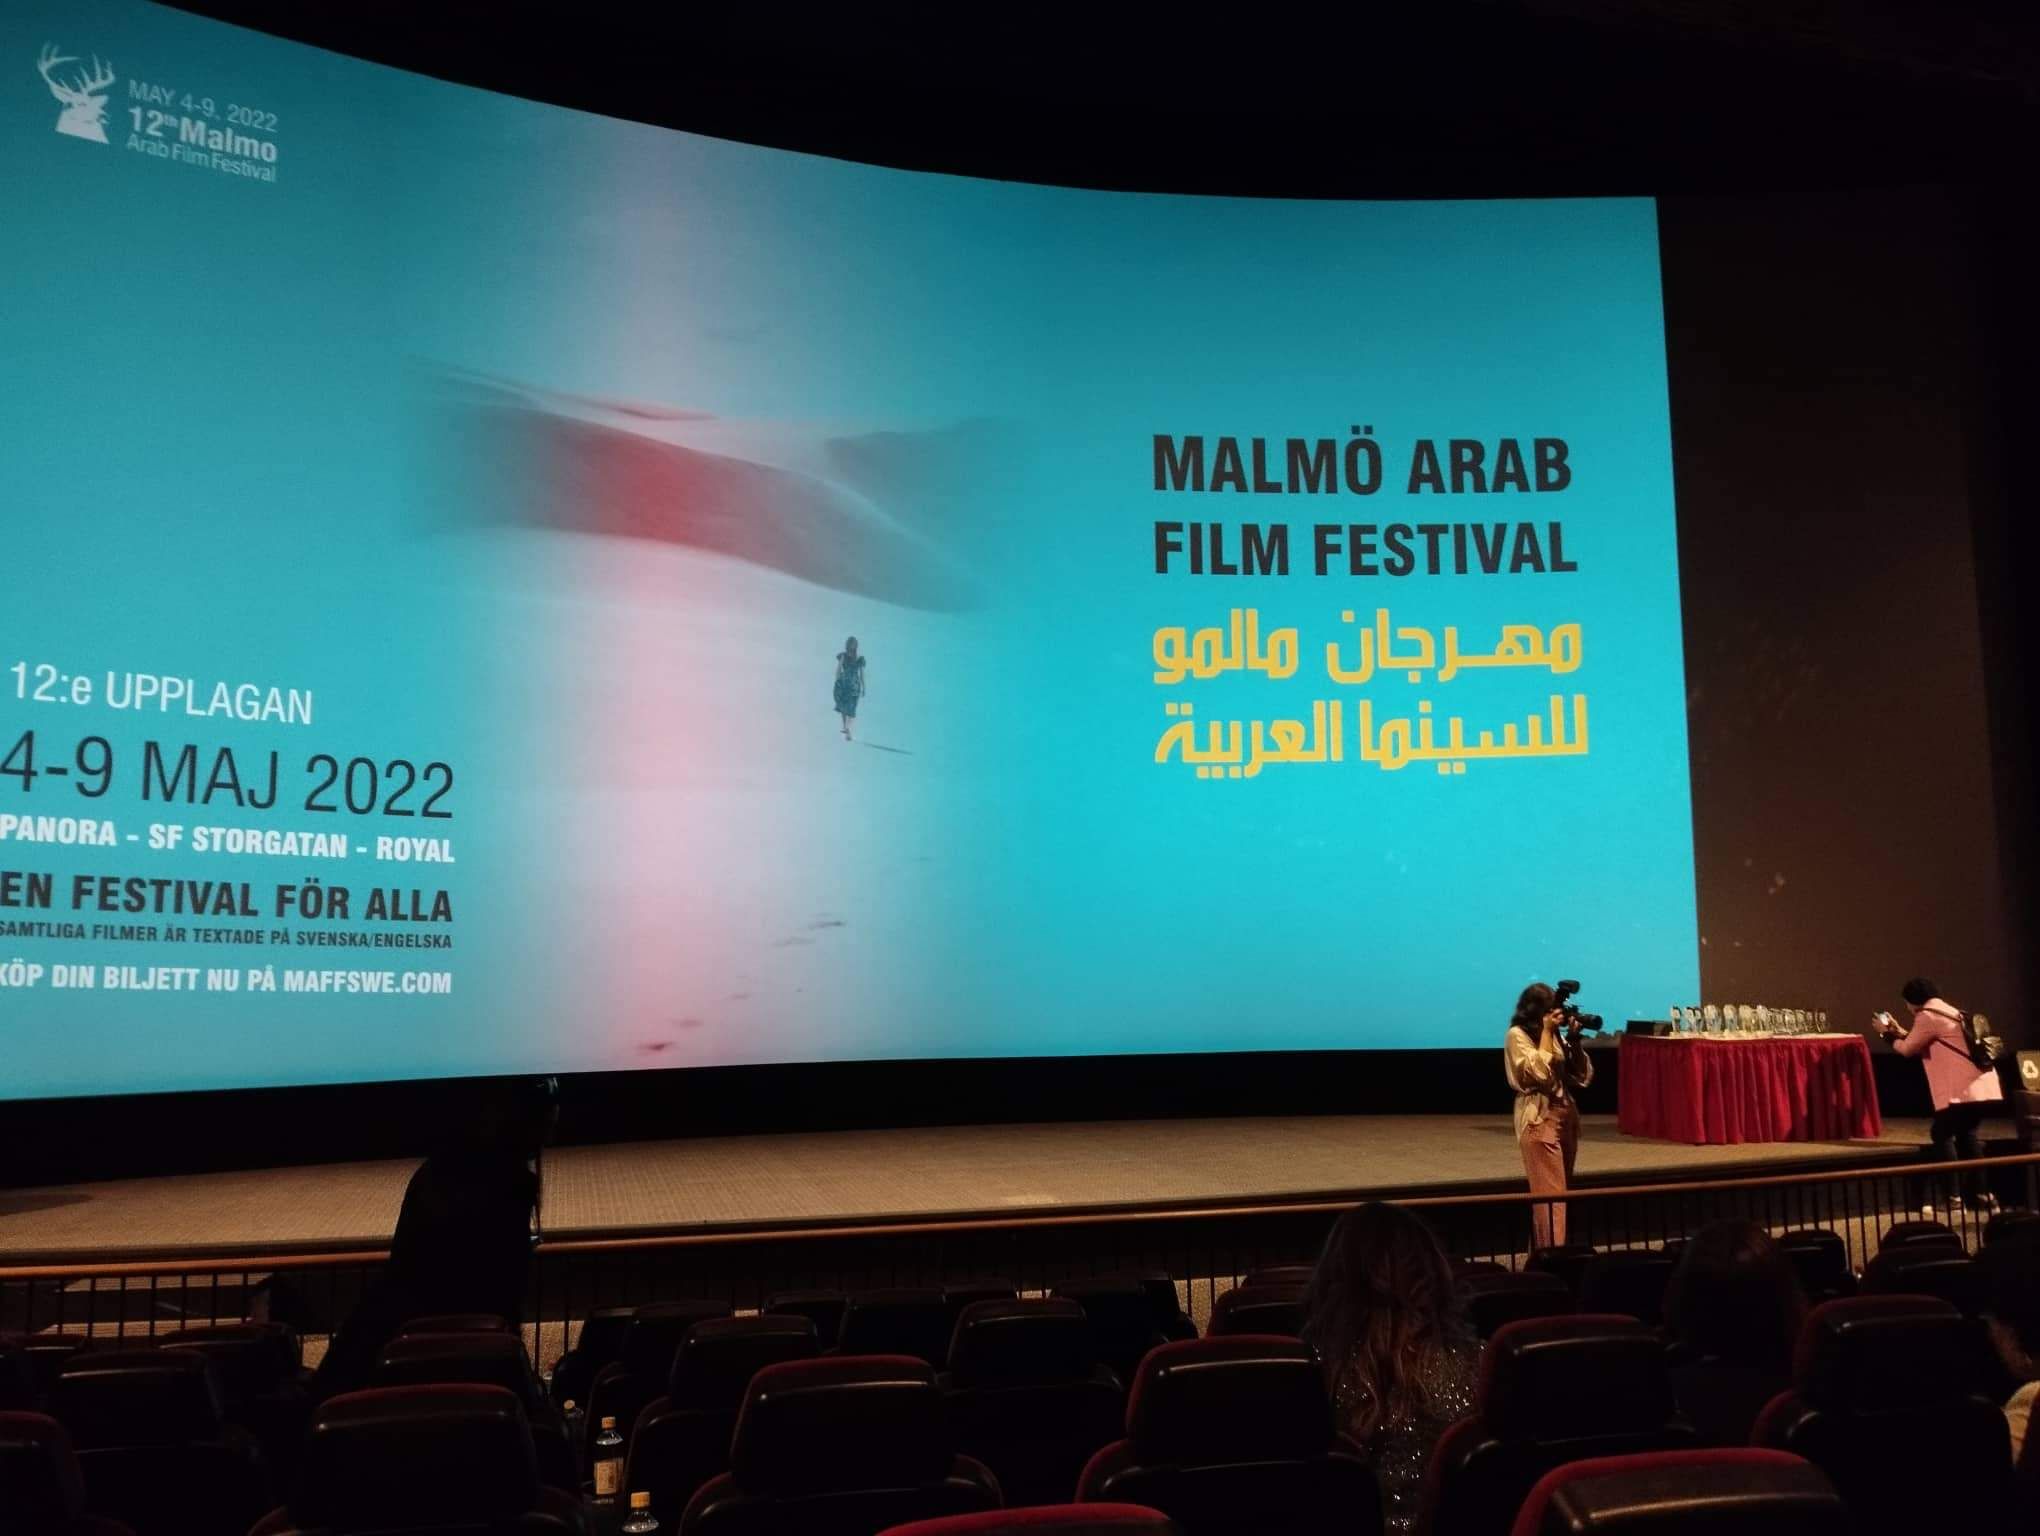 الوثائقي من القاهرة يفوز بجائزة لجنة تحكيم مهرجان مالمو للسينما العربية (3)